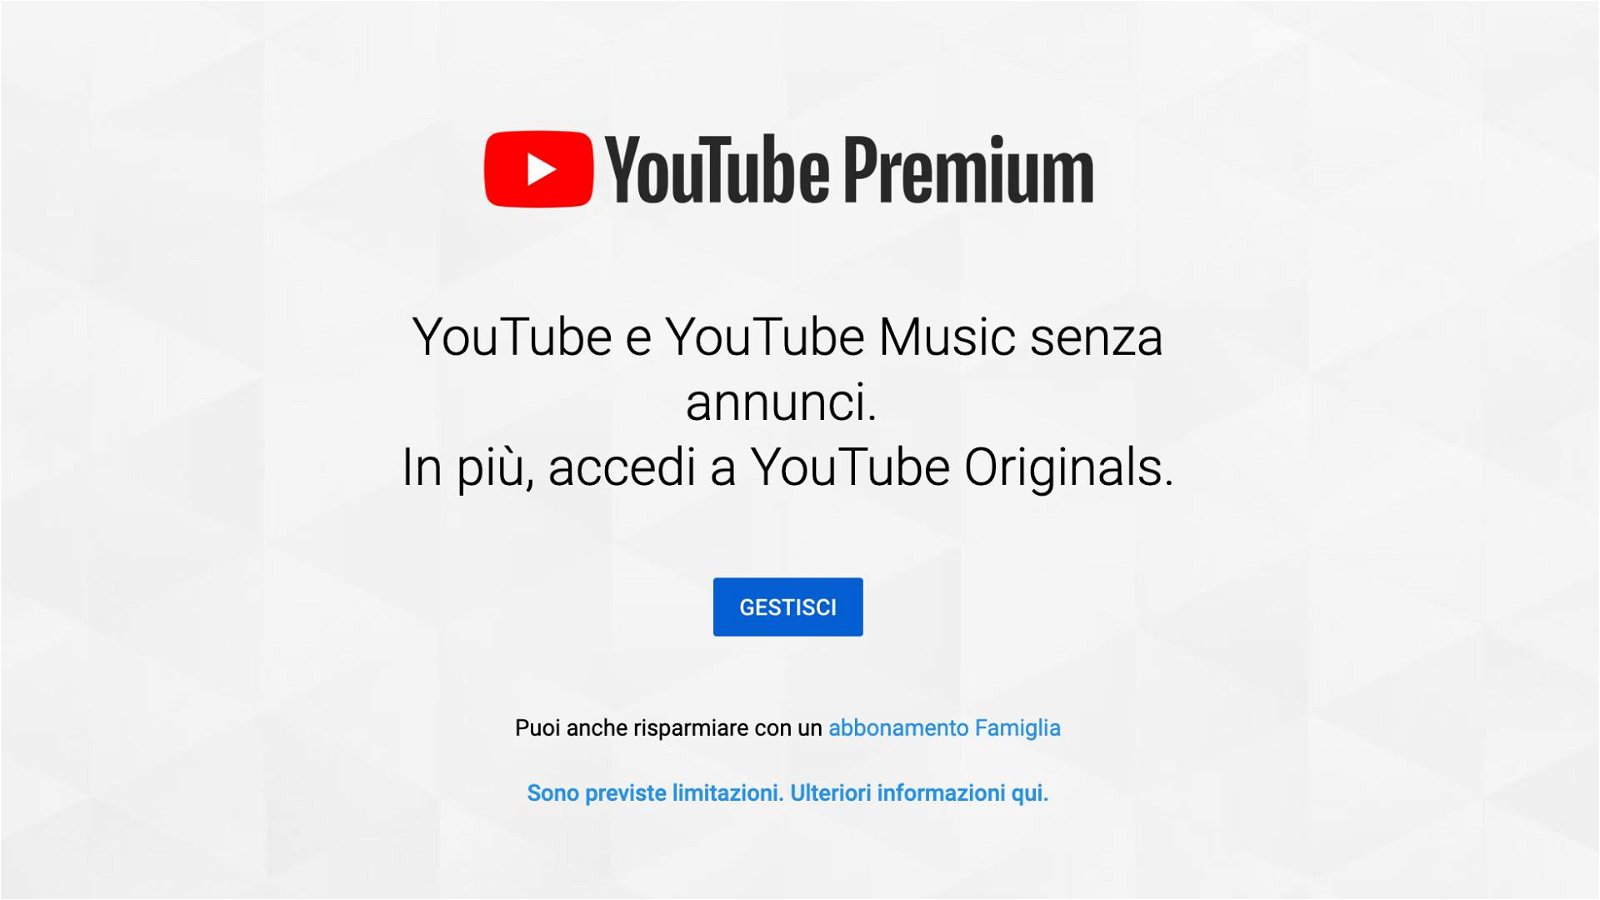 Immagine di YouTube Premium, cos'è e come funziona